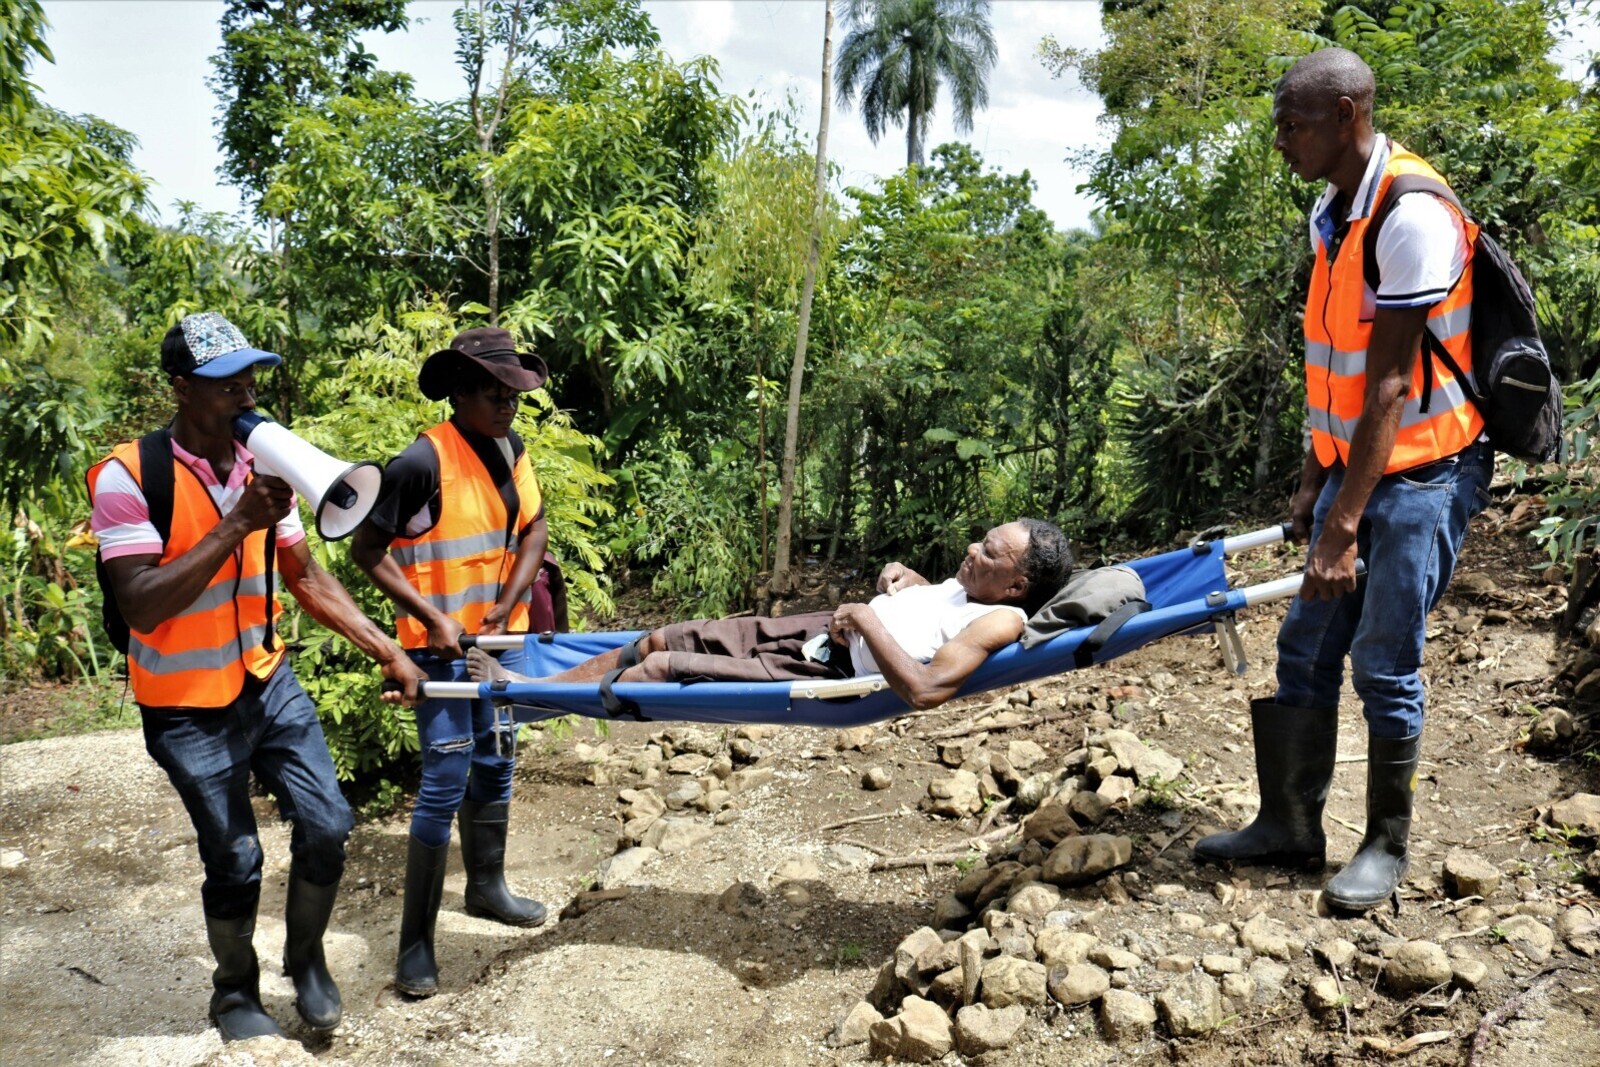 Katastrophenübung auf Haiti: Männer in Warnwesten transportieren eine Frau auf einer Krankenbahre